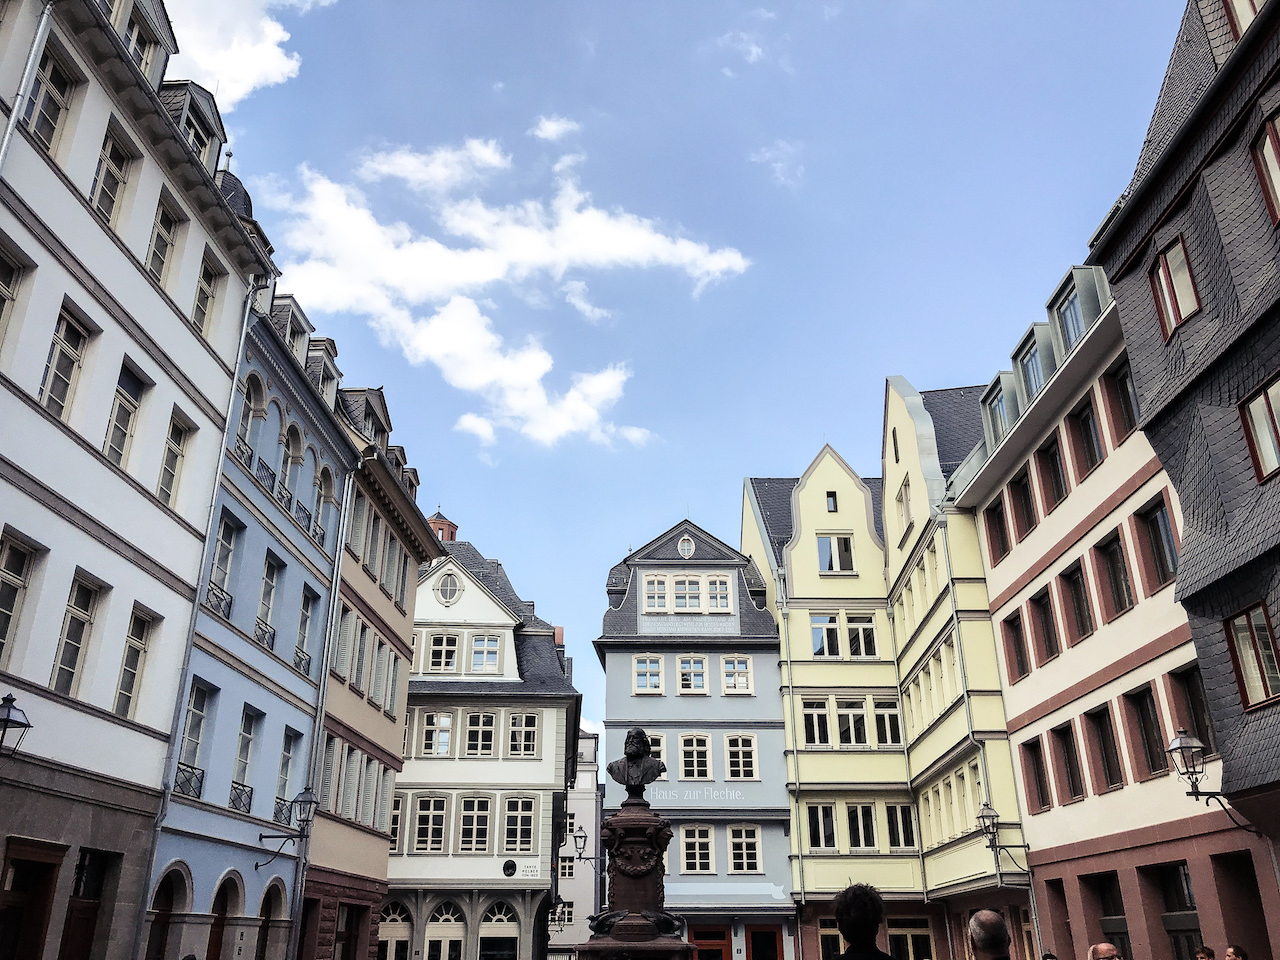 Frankfurt's Neu Altstadt. Photo by @twsbanter